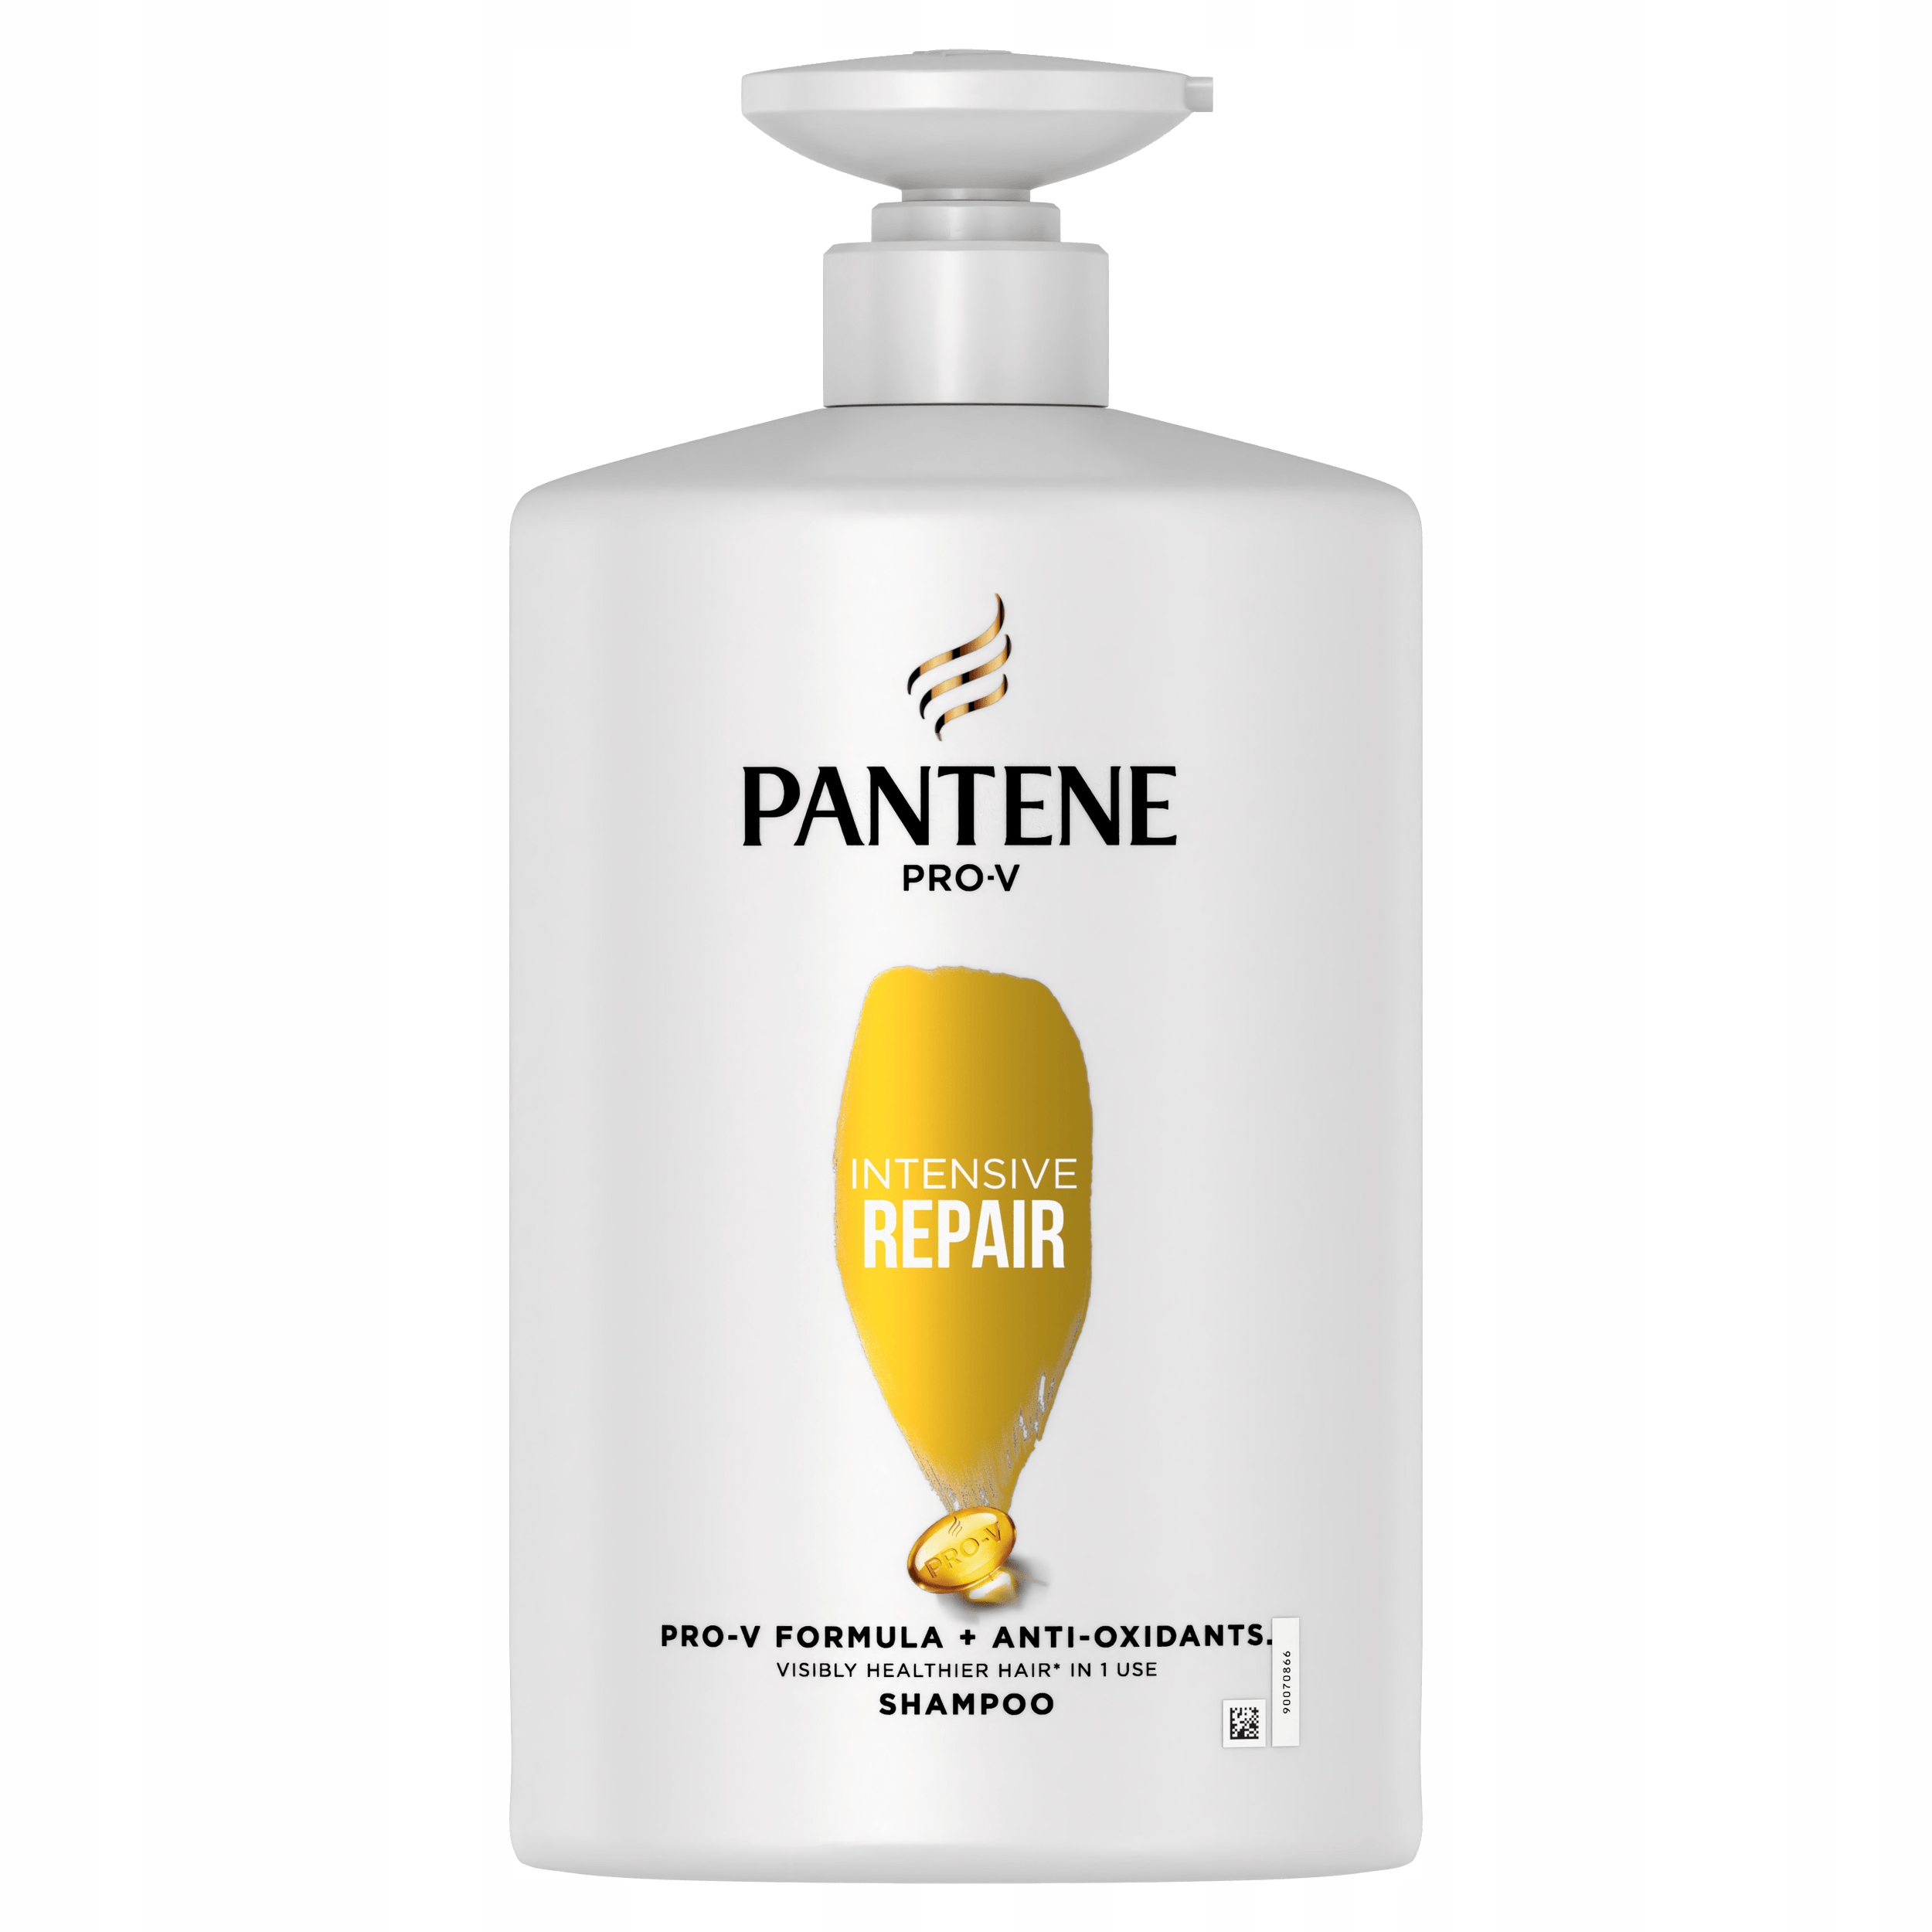 szampon pantene intensiv repair cena